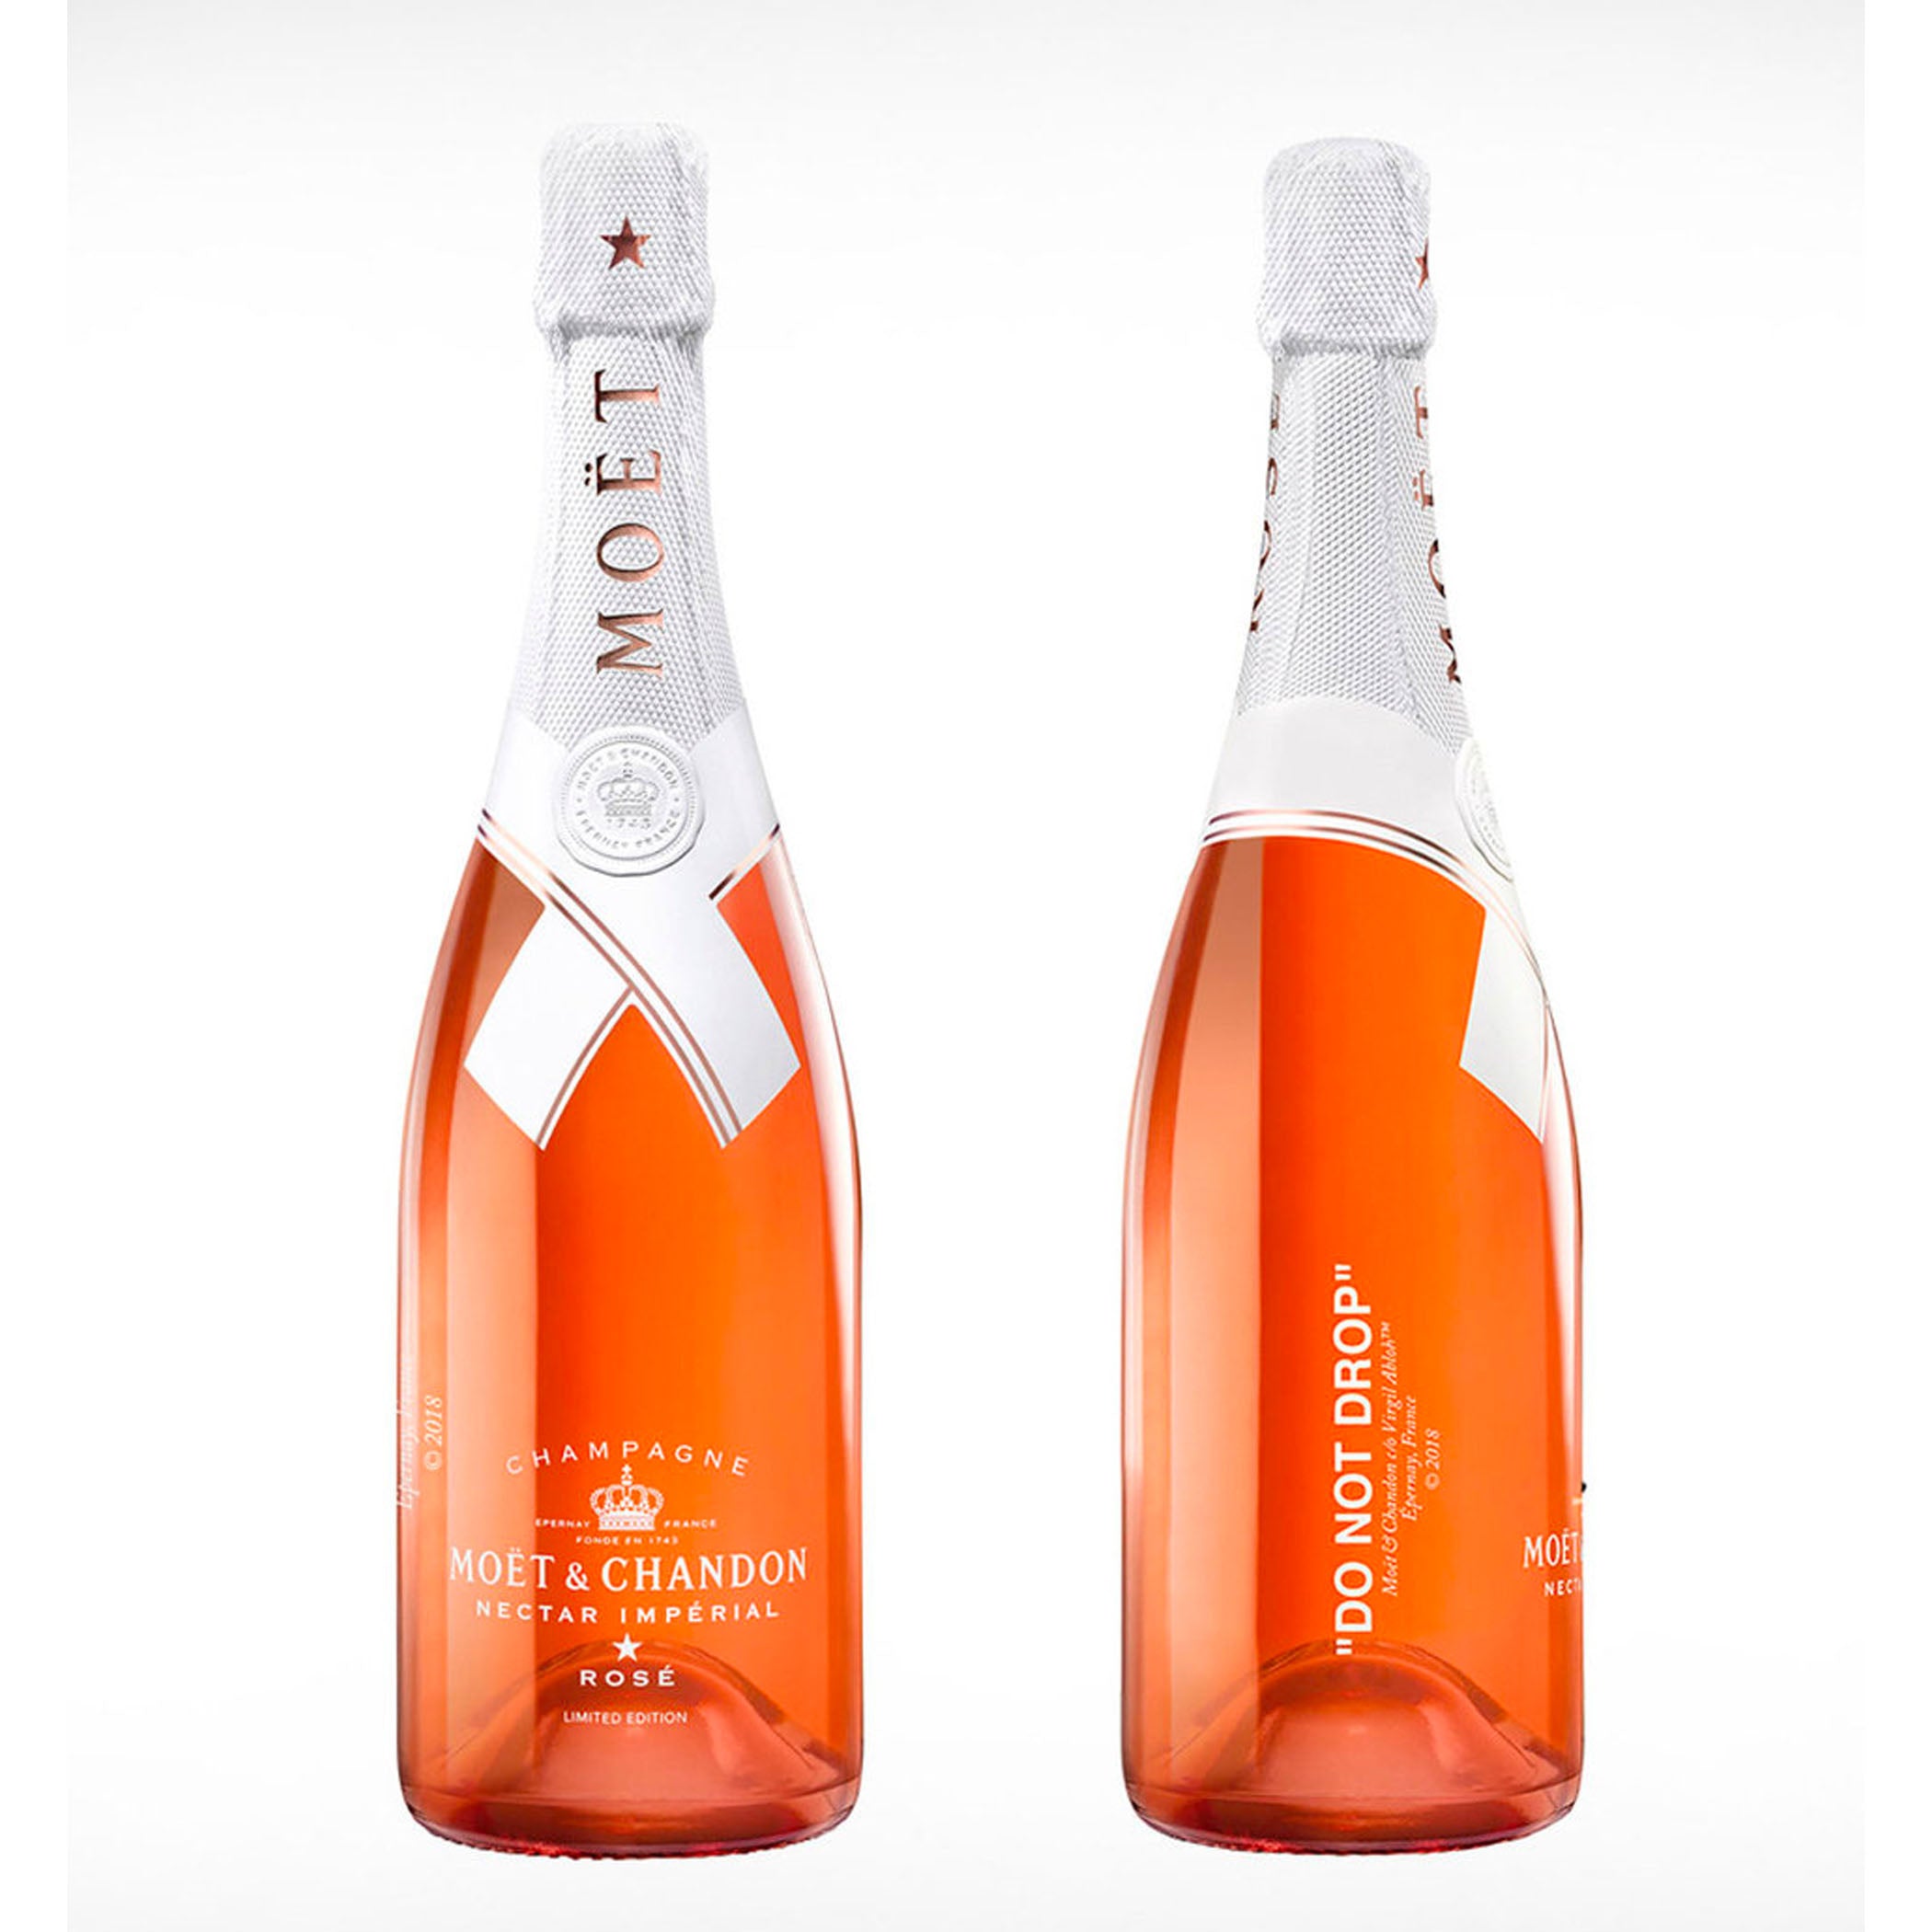 Moet & Chandon Imperial Rosé Champagne Virgil Abloh Edition